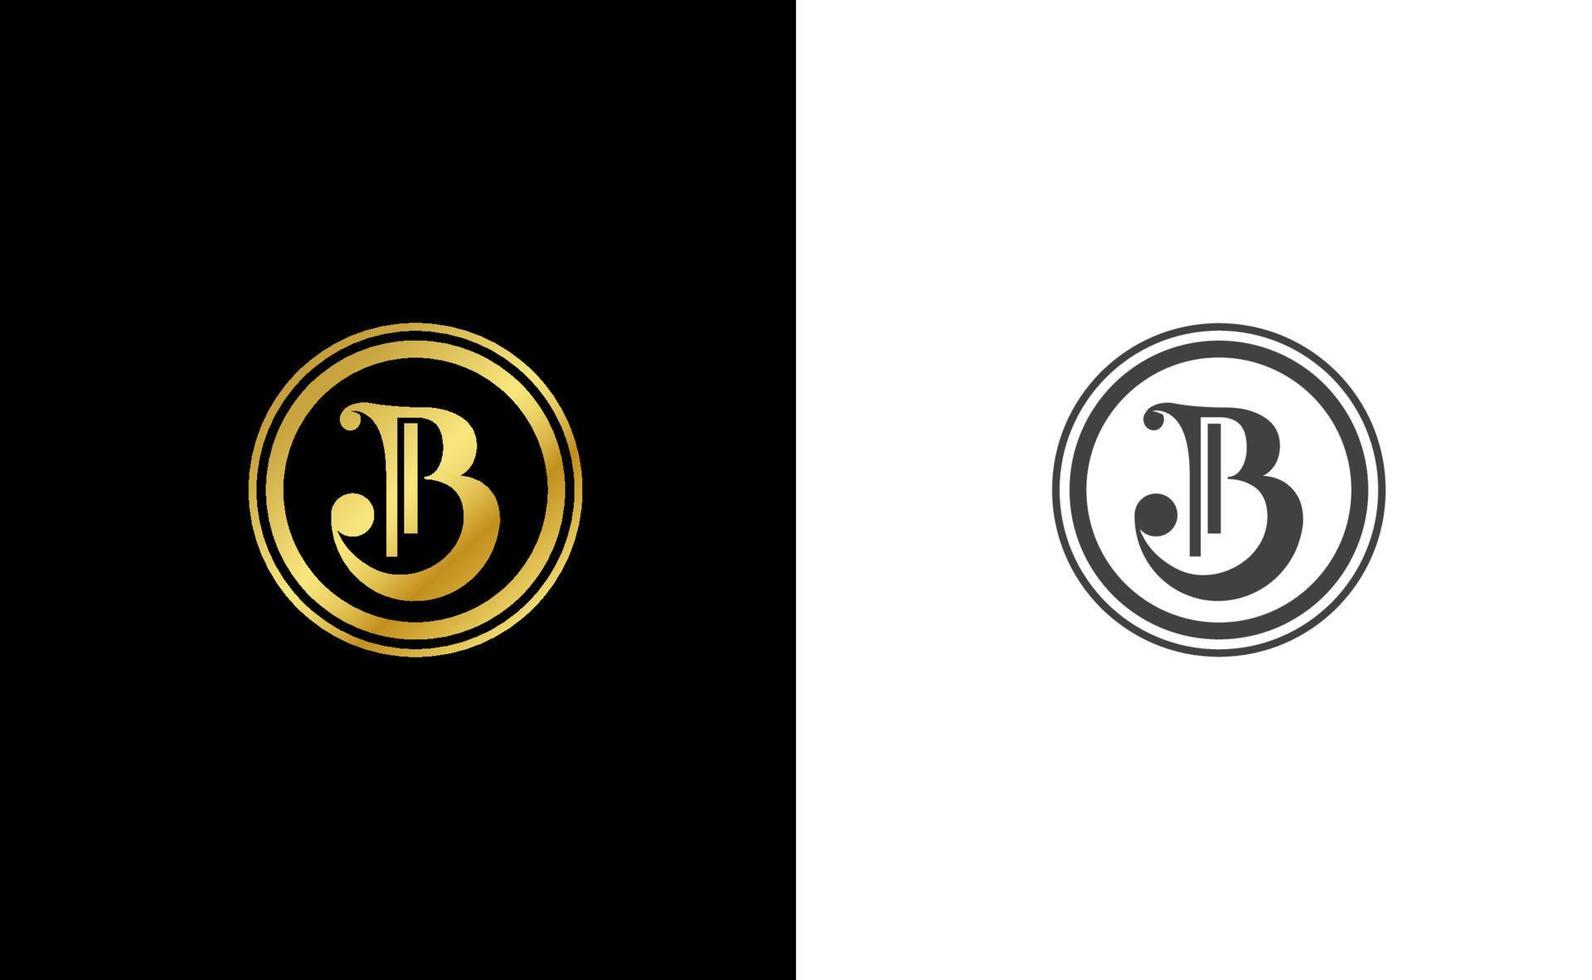 Plantilla de logotipo de vector de monograma de letra inicial b en estilo de lujo dorado